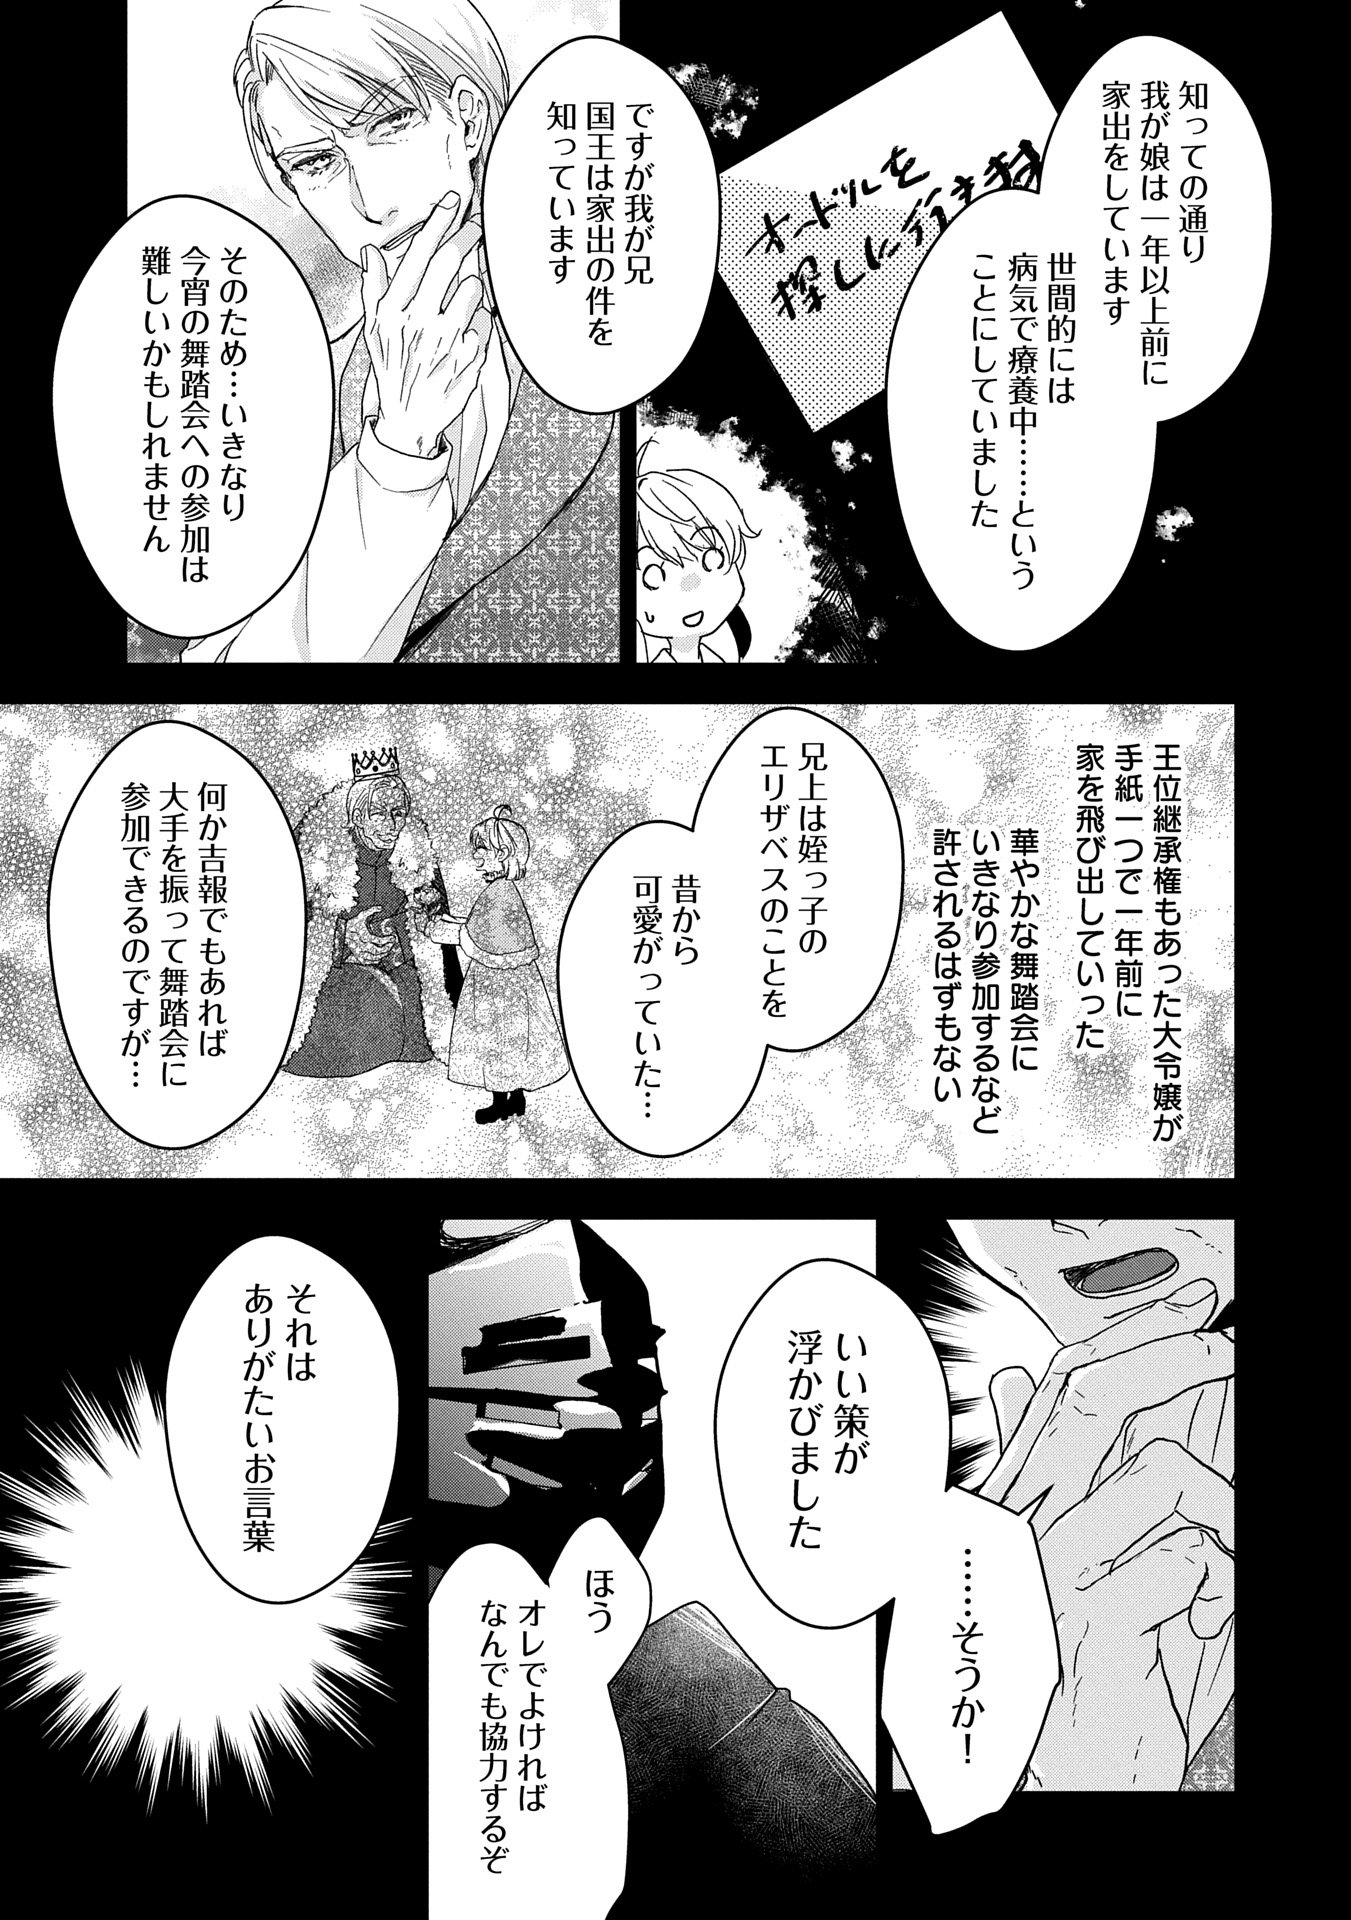 Senki to Yobareta Otoko, Puke ni Ansatsu Saretar Musume wo Hiroi, Issho ni Slow Life wo Hajimeru - Chapter 28.2 - Page 3